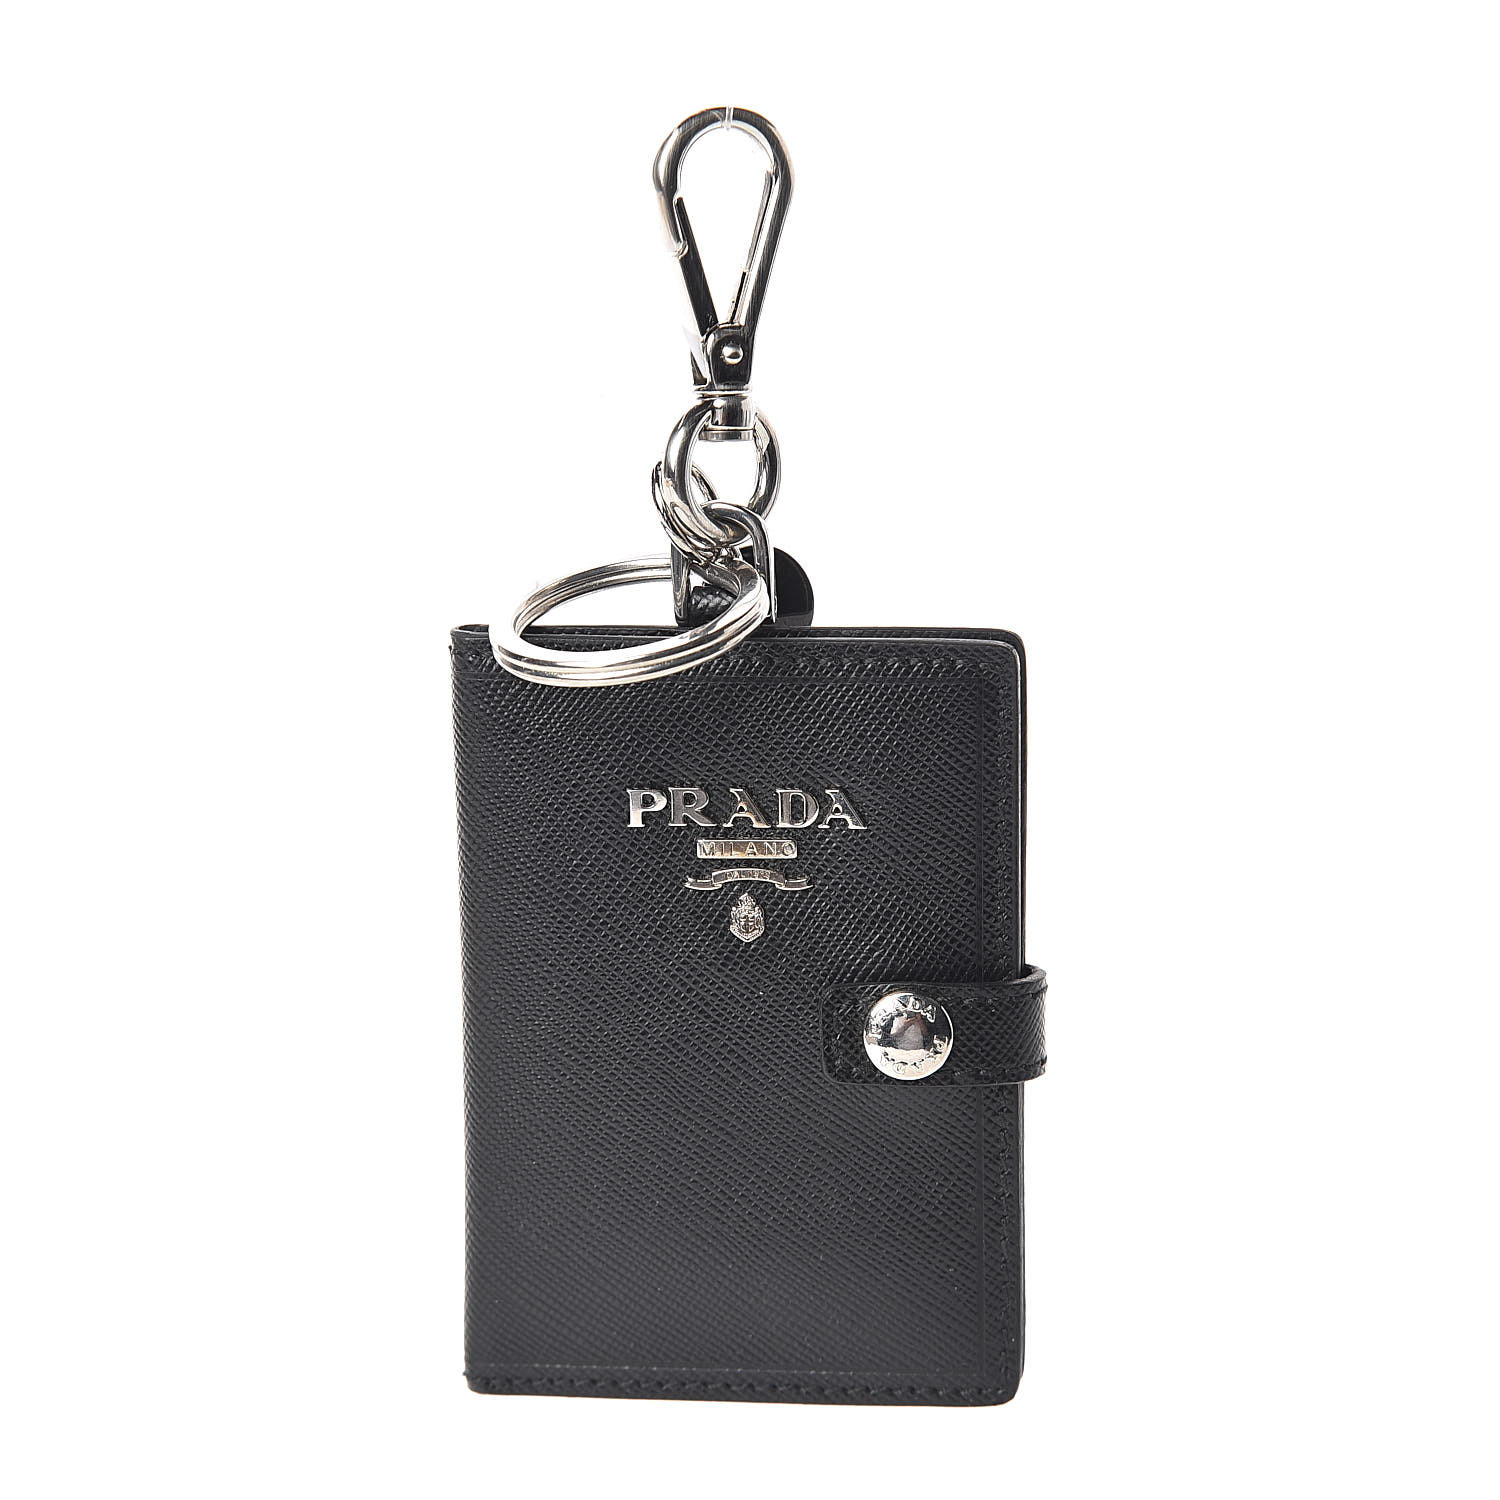 prada key card holder